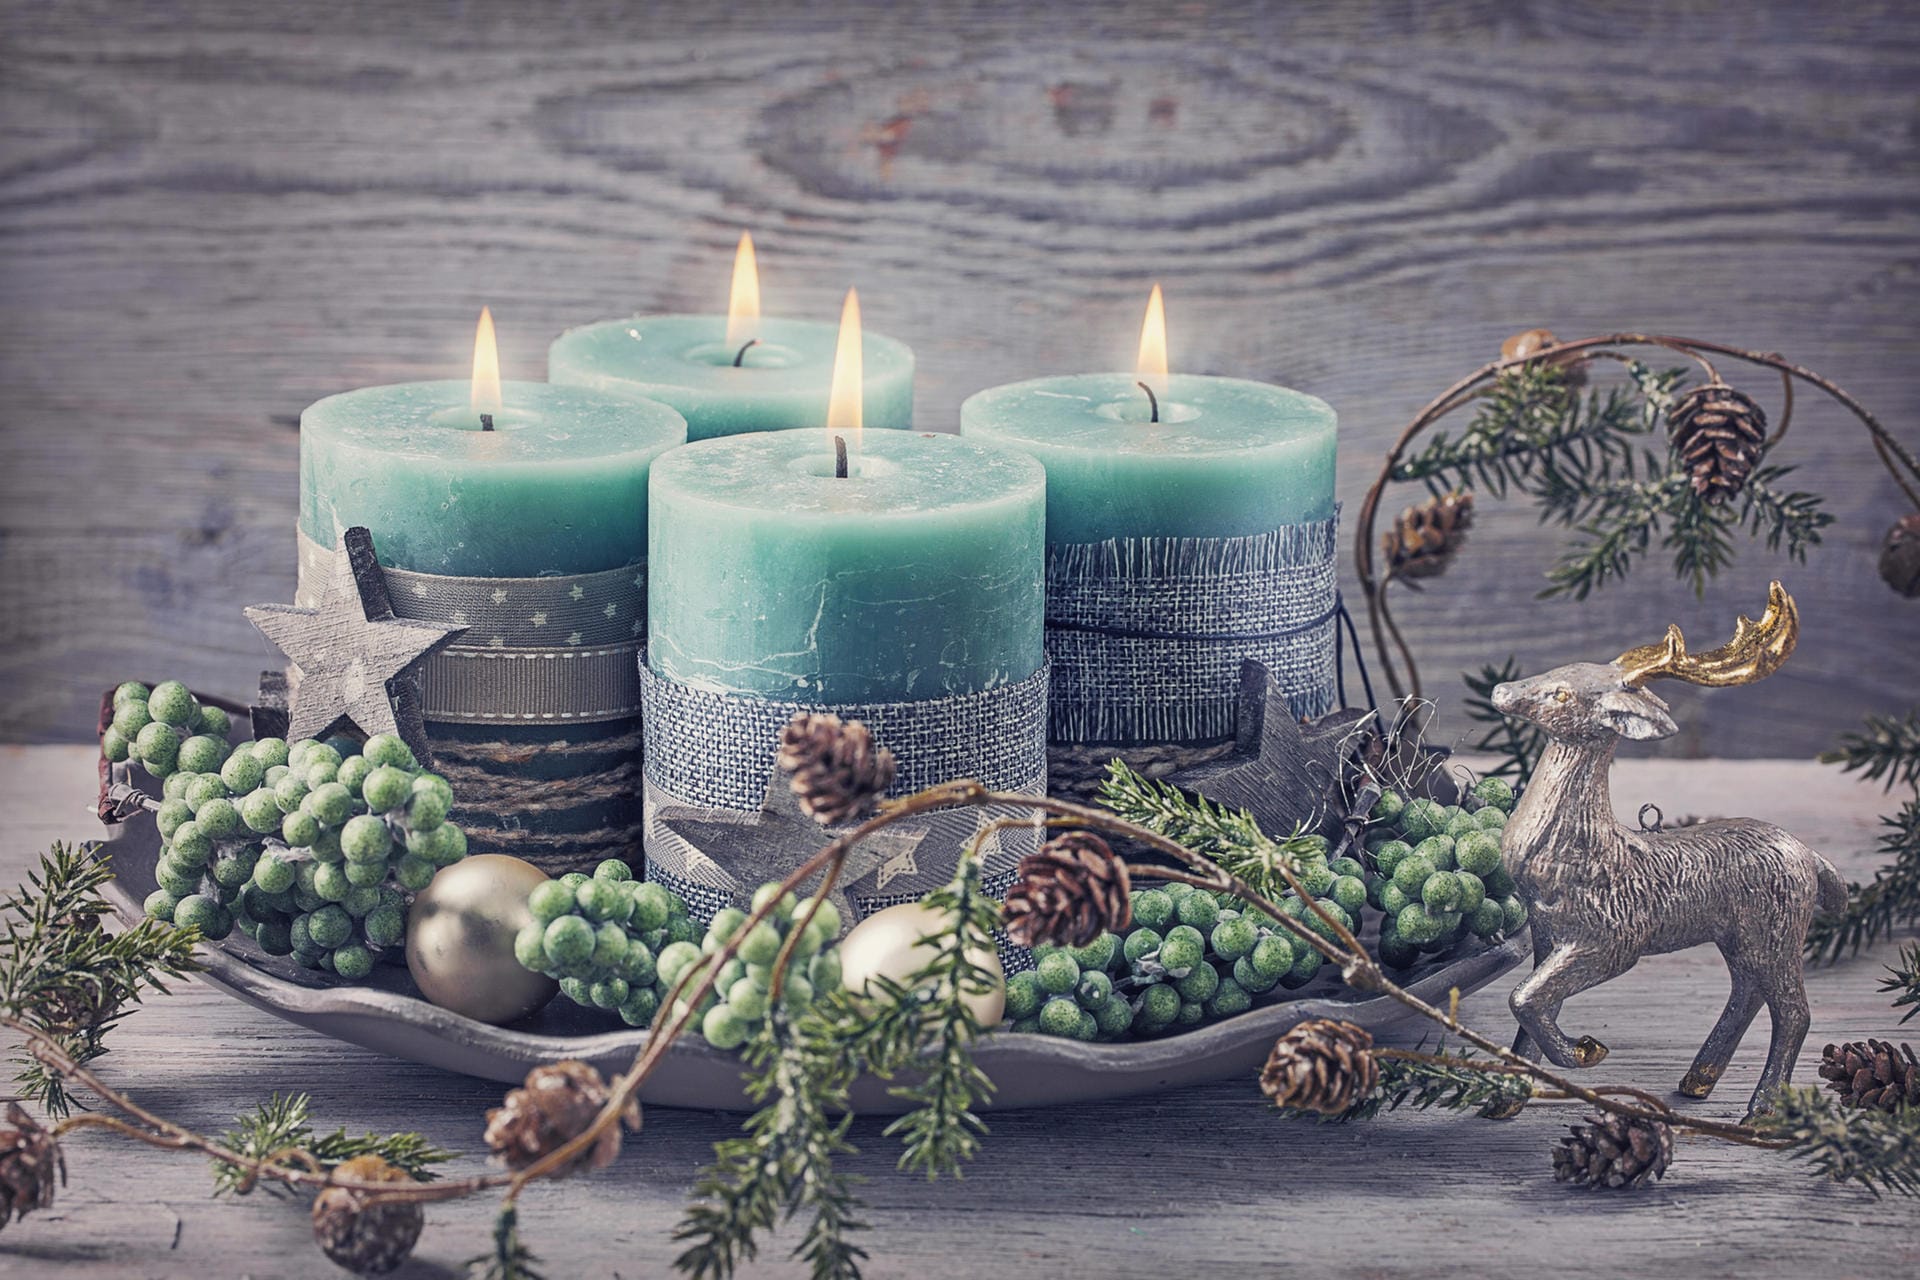 Adventskranz mit grünen Kerzen: Der klassische Adventskranz weicht immer öfter modernen Varianten ohne Tanne und in neuen Farben. Auch grün, blau, rosa oder gelb spielen neuerdings eine Rolle bei der Weihnachtsdekoration.